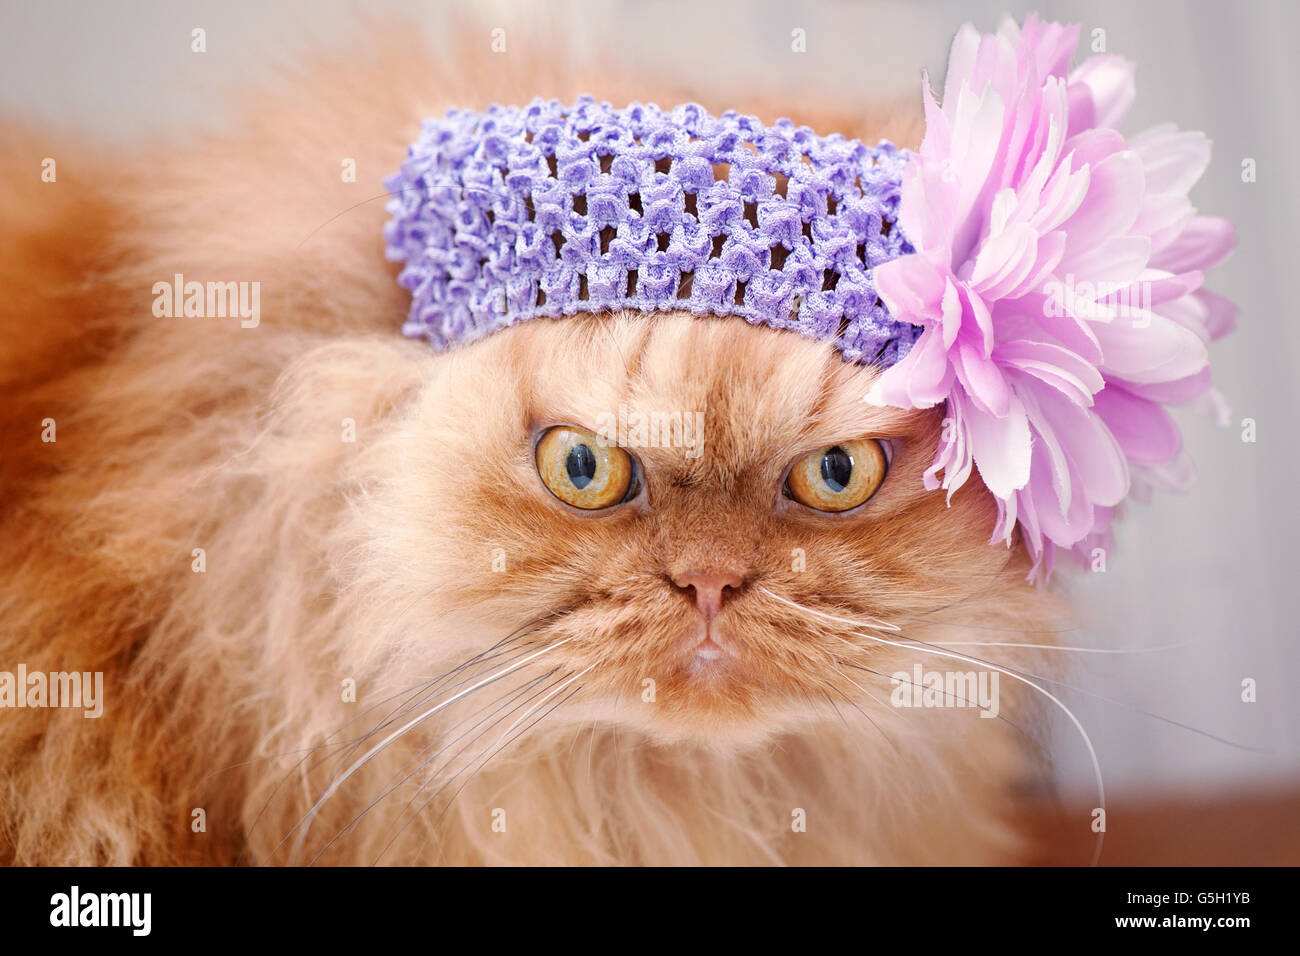 Cerchietto per gatti immagini e fotografie stock ad alta risoluzione - Alamy